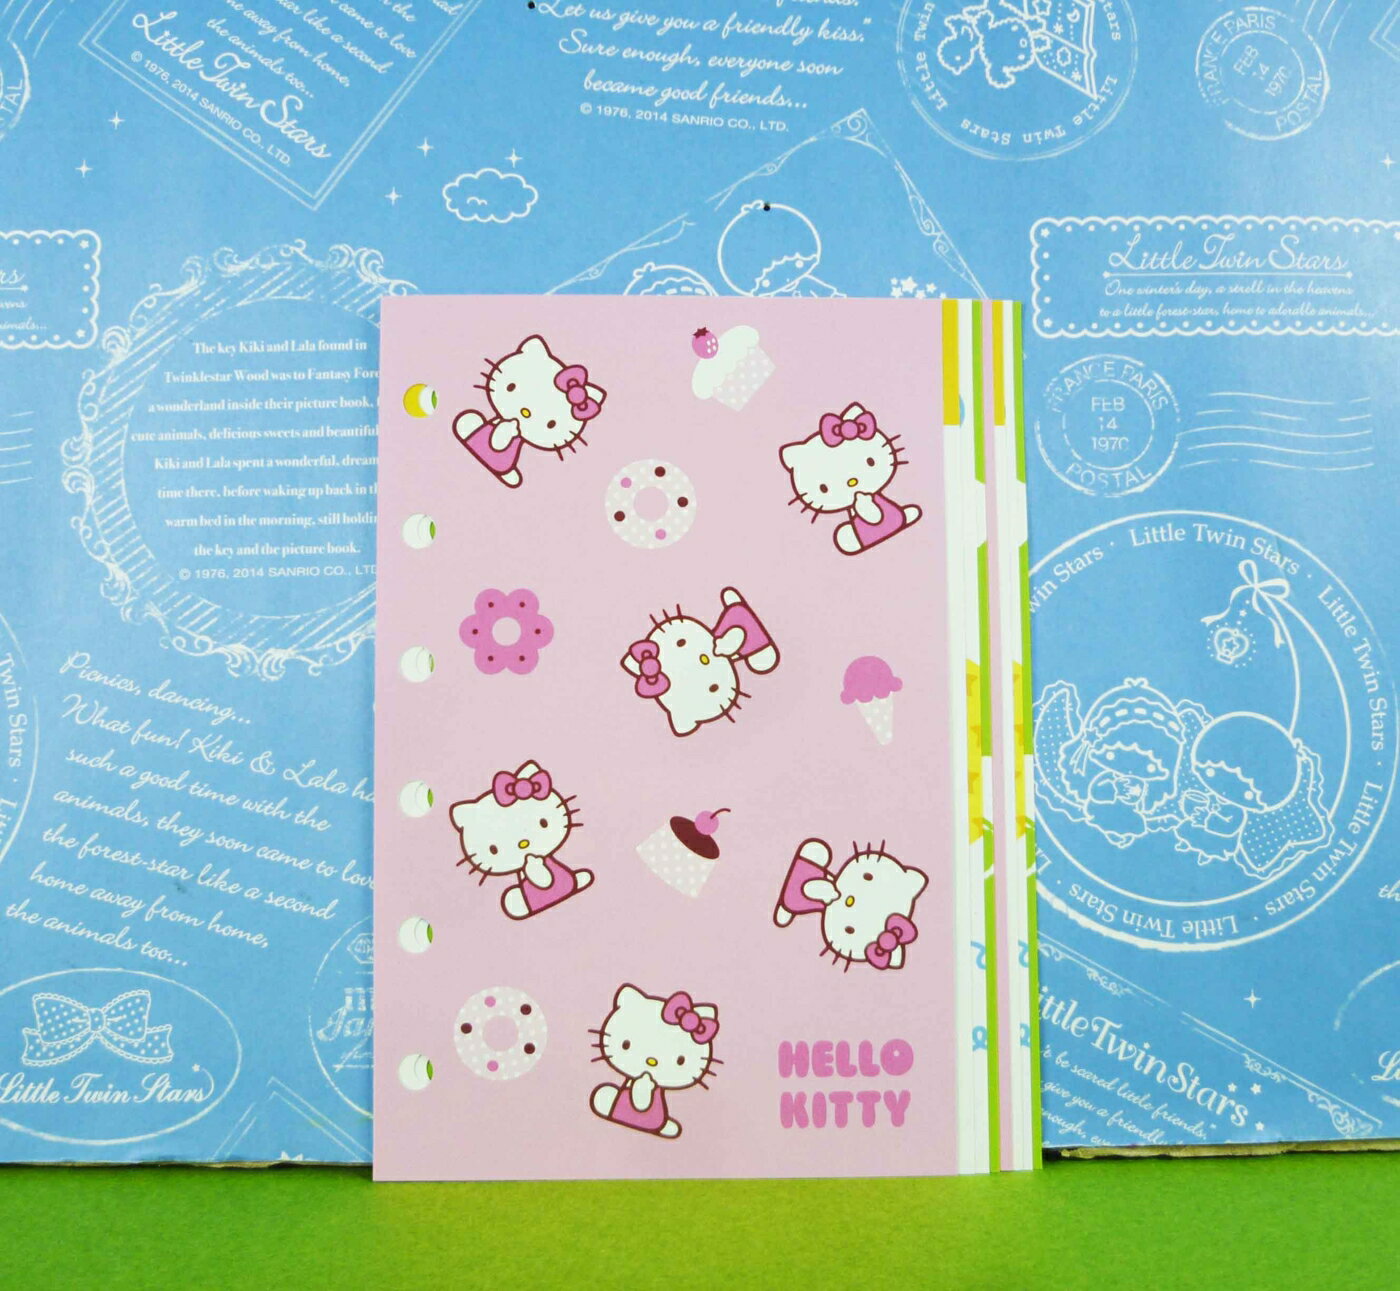 【震撼精品百貨】Hello Kitty 凱蒂貓 貼紙內頁-冰淇淋粉圖案【共1款】 震撼日式精品百貨